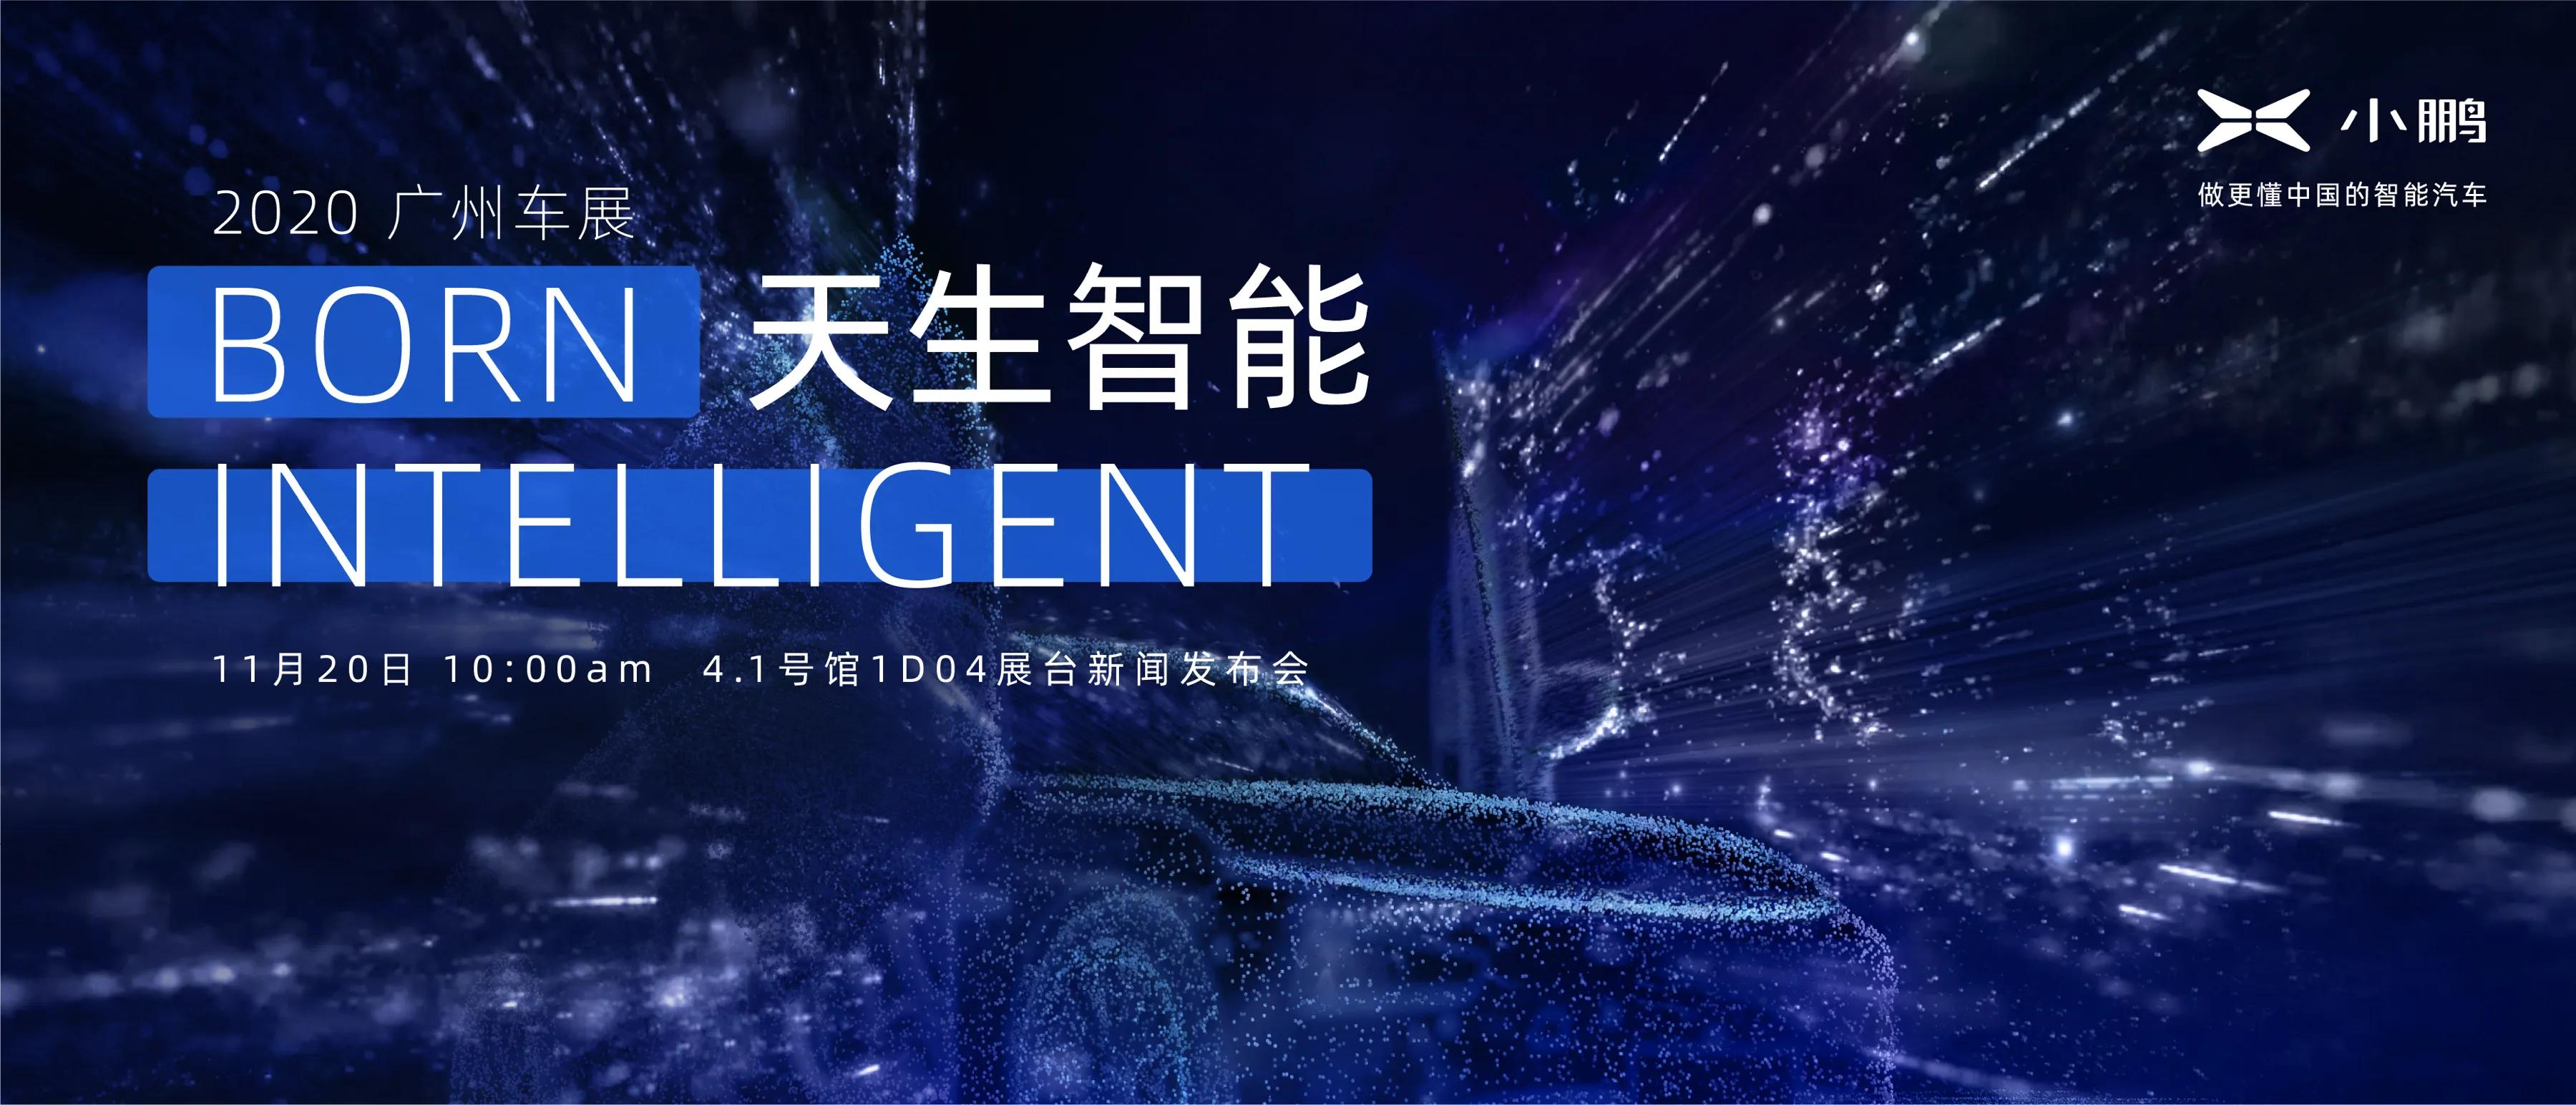 天生智能 小鹏汽车将携P7旗舰新品登陆2020广州国际车展